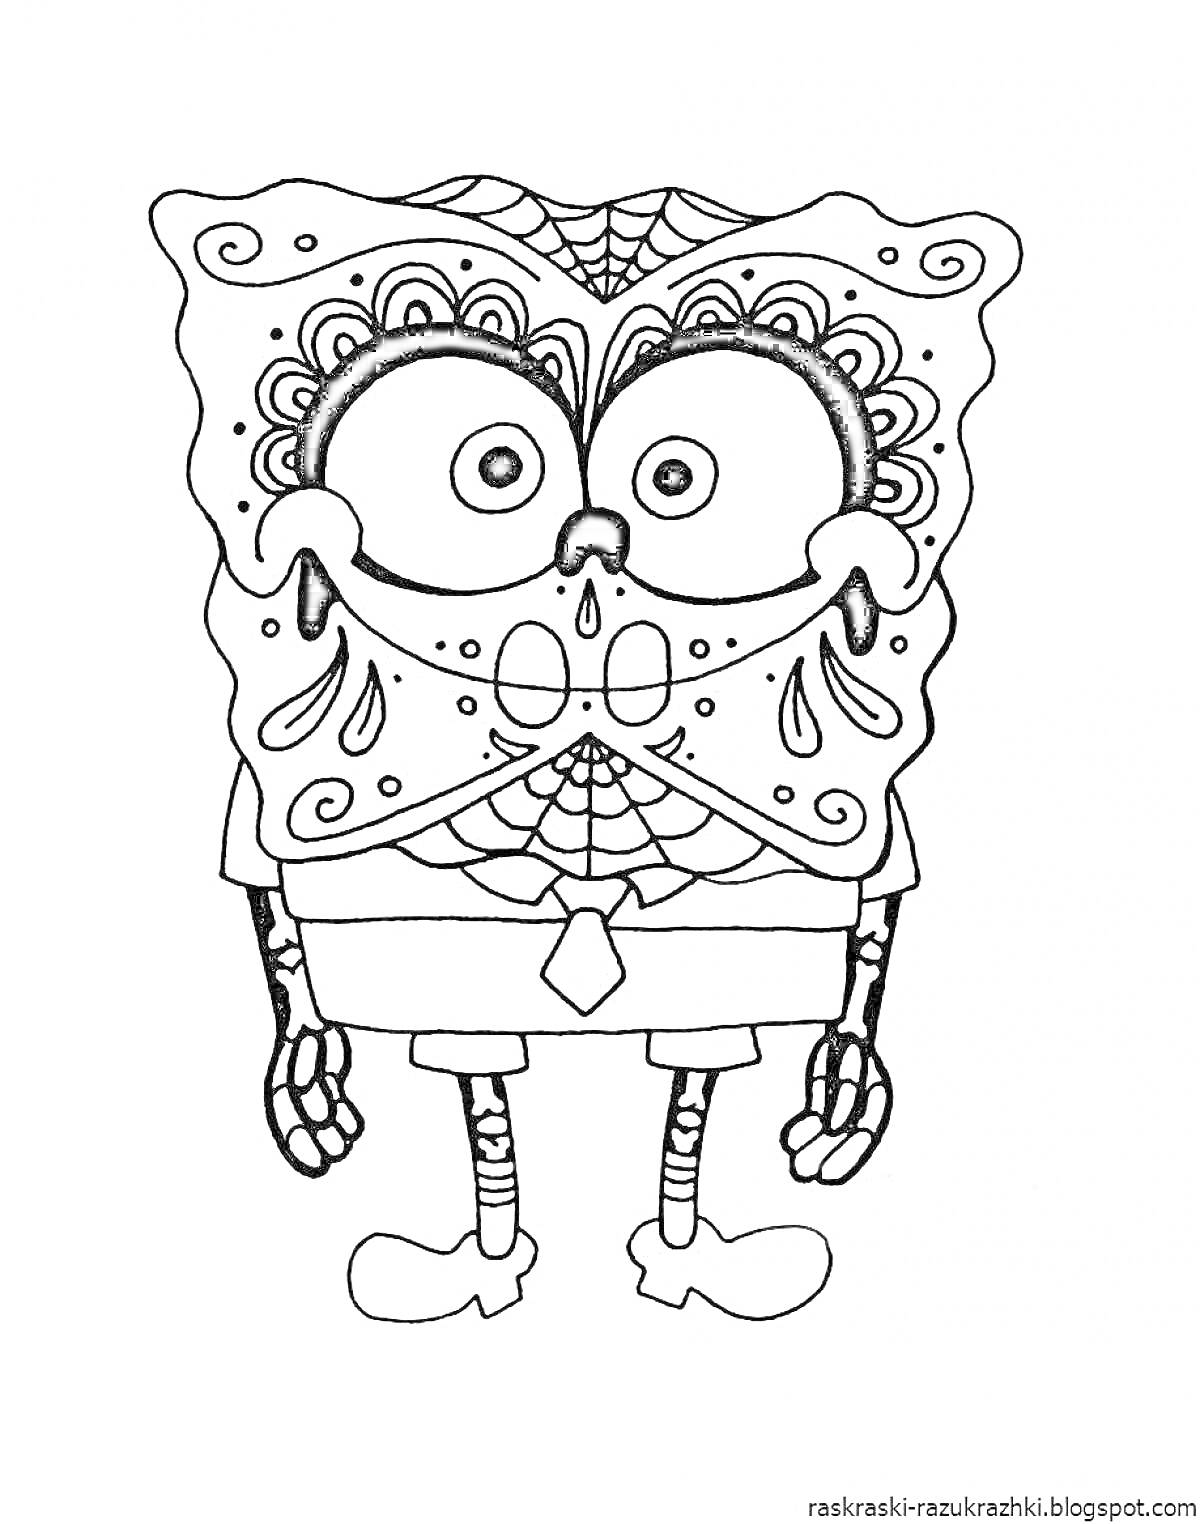 Раскраска персонаж-губка с рисунками в стиле дудл и день мертвых, в рубашке и галстуке, узоры паутины на лице